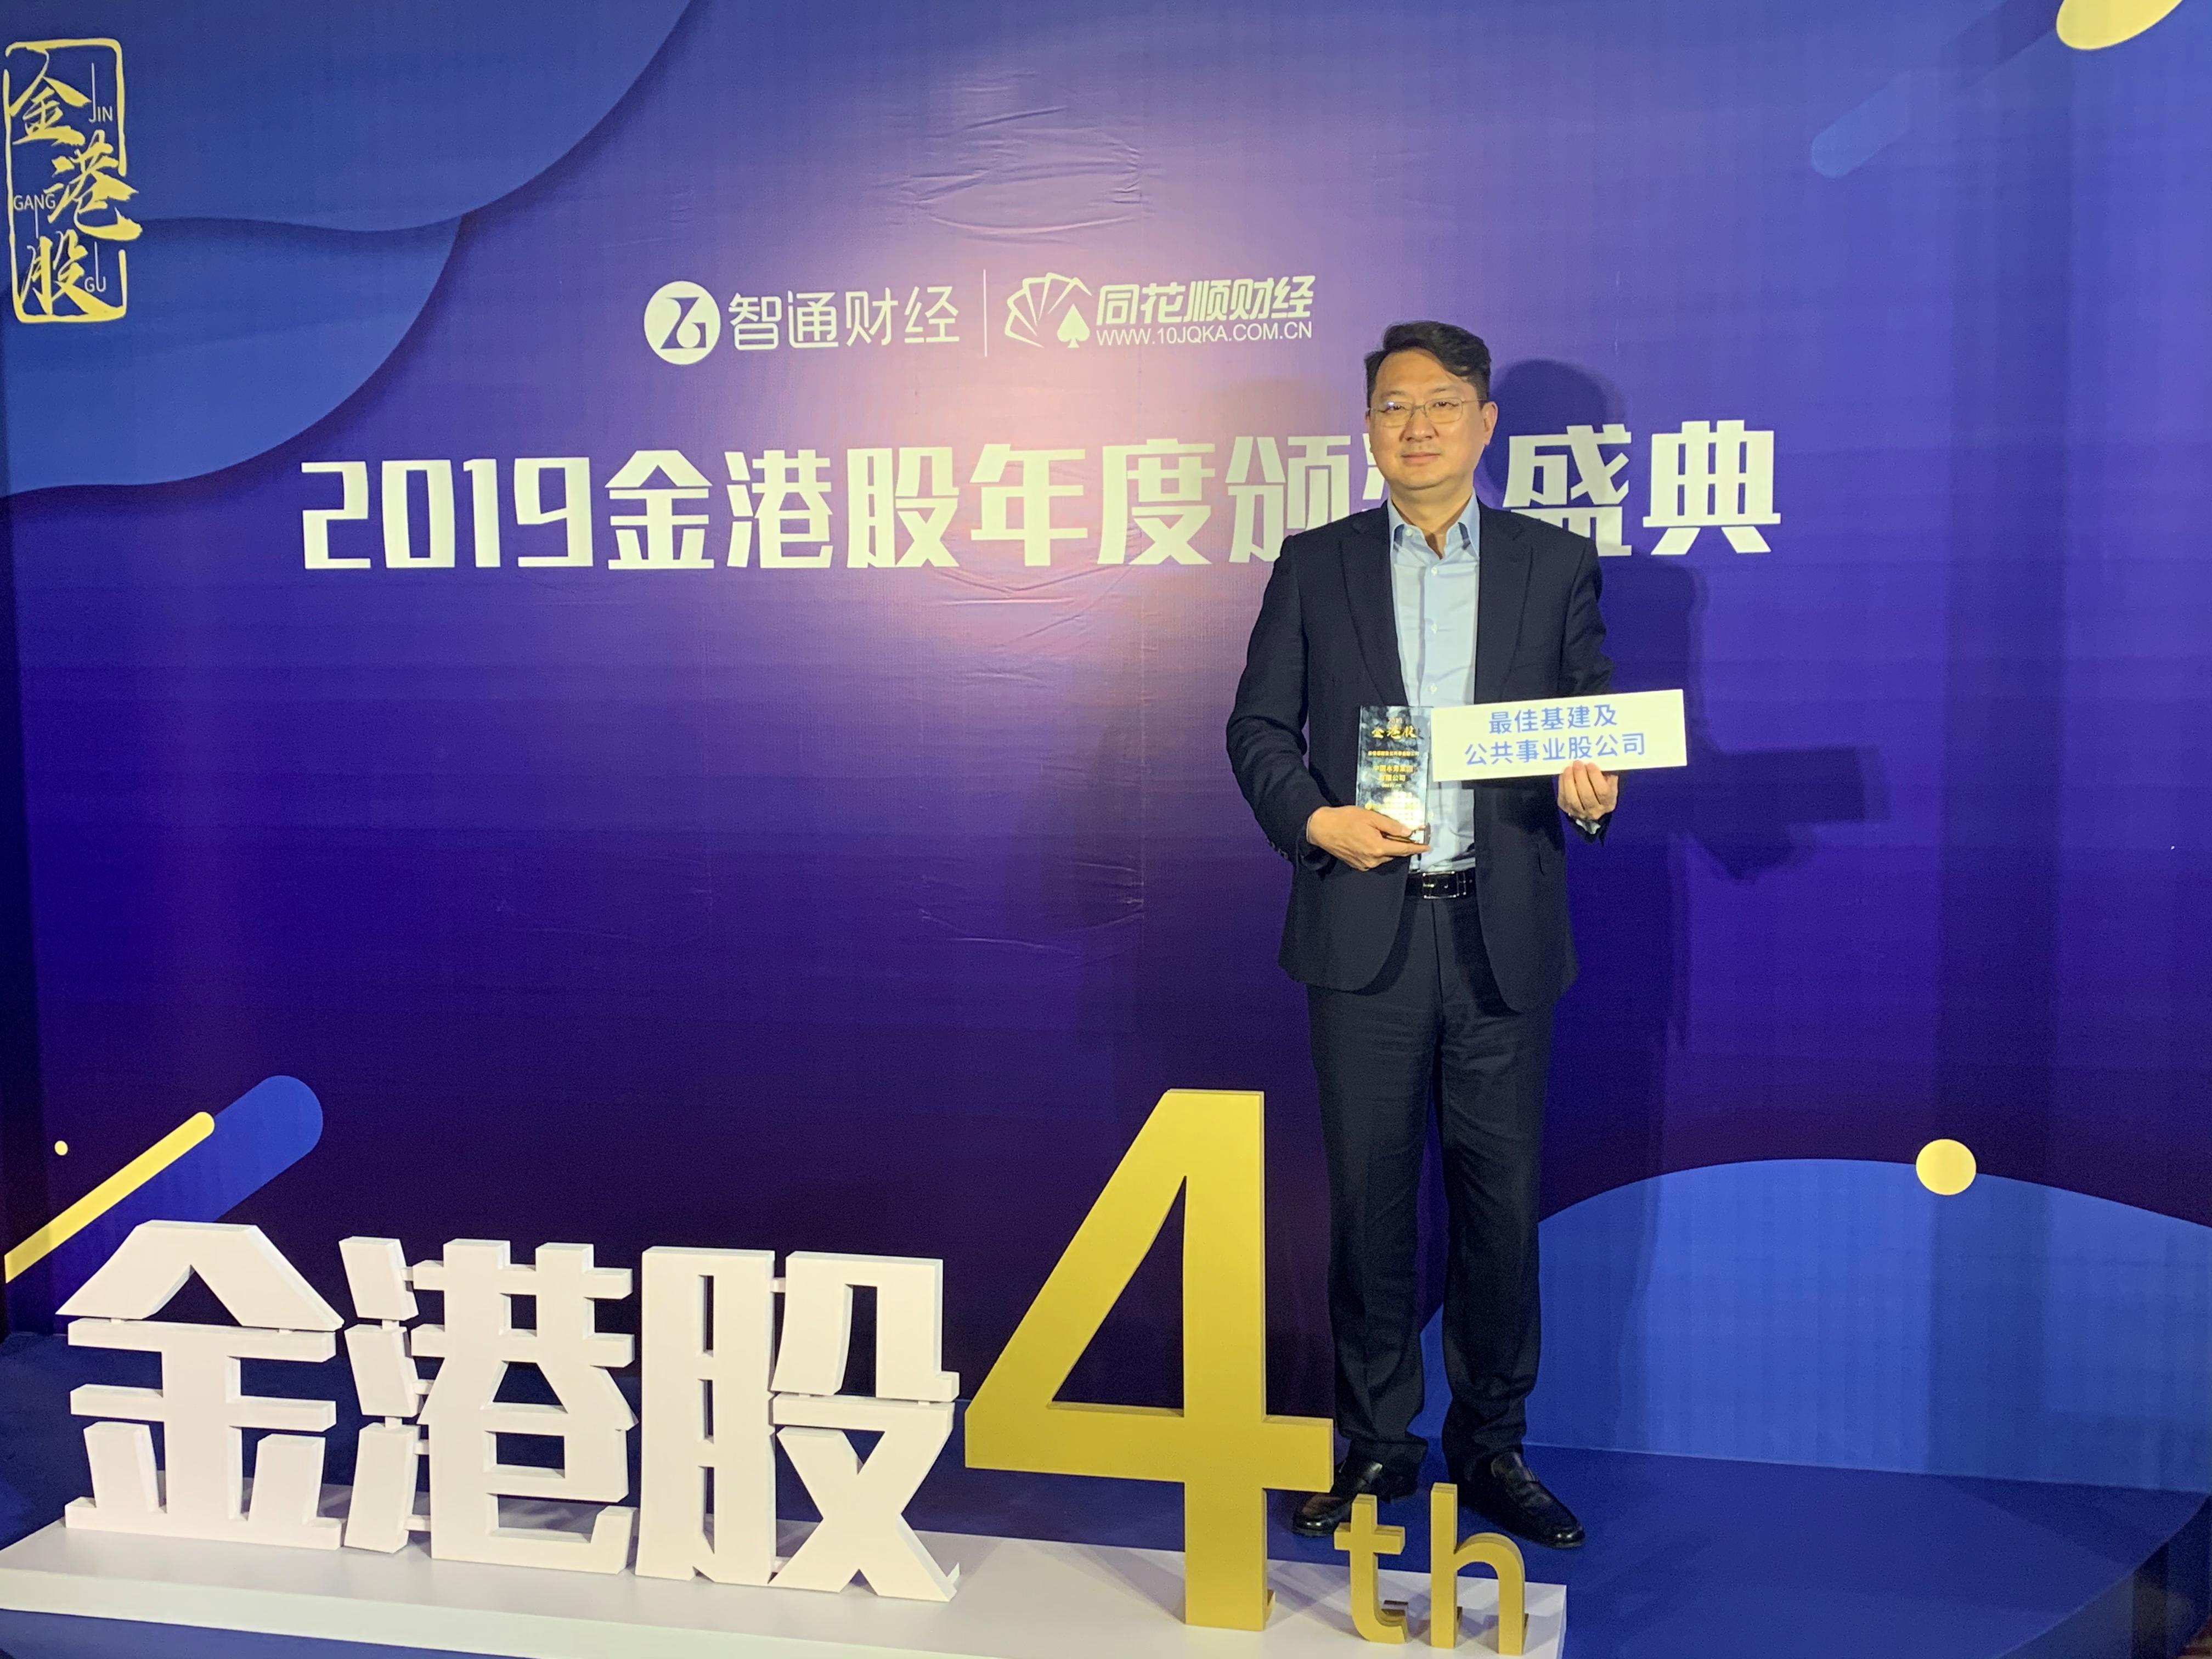 中國水務榮獲「2019金港股」「最佳基建及公共事業股公司」大獎